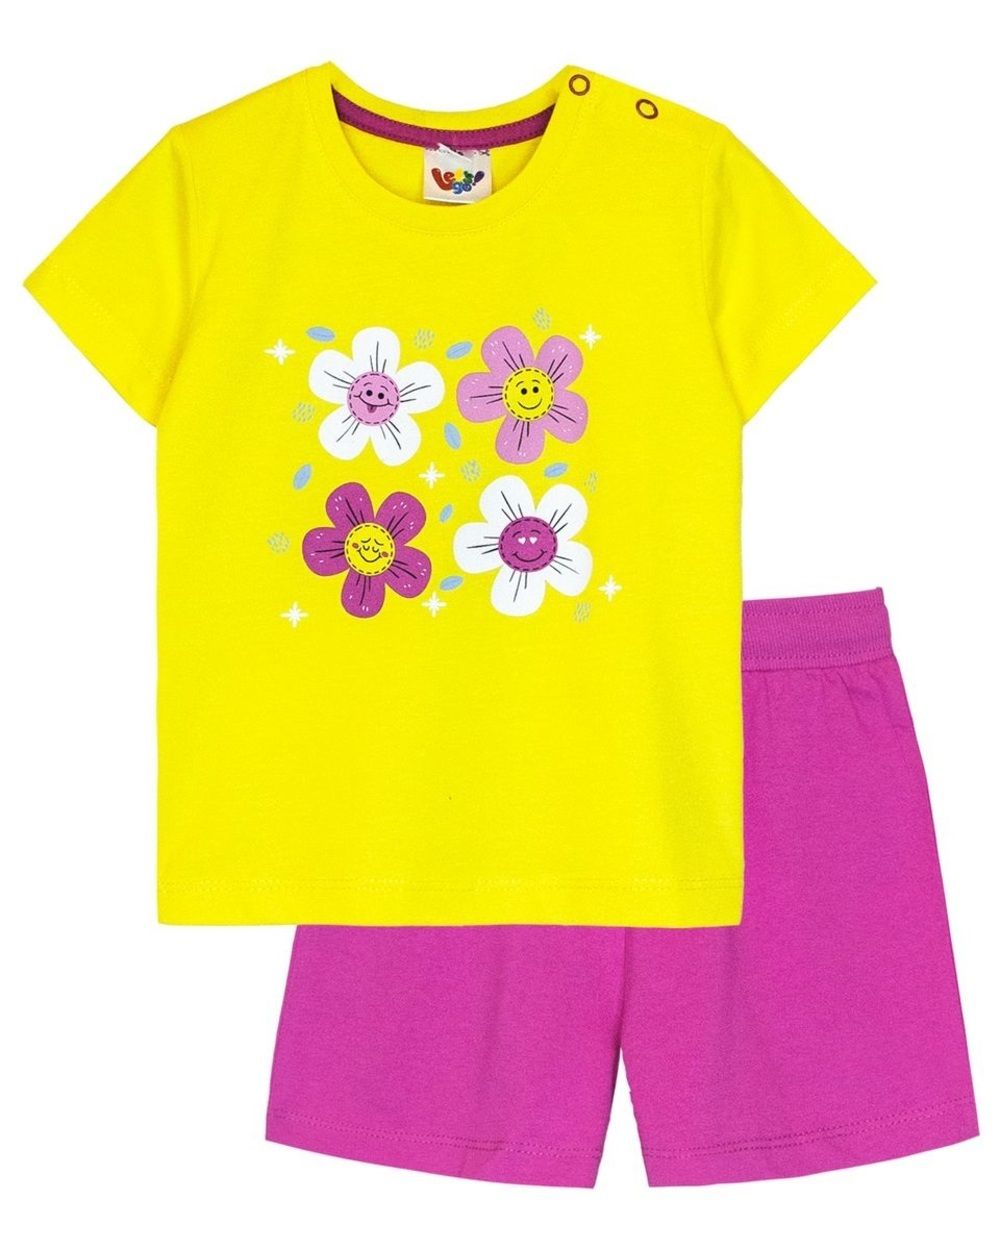 Комплект для девочки (футболка+шорты) 41131 - желтый/фуксия